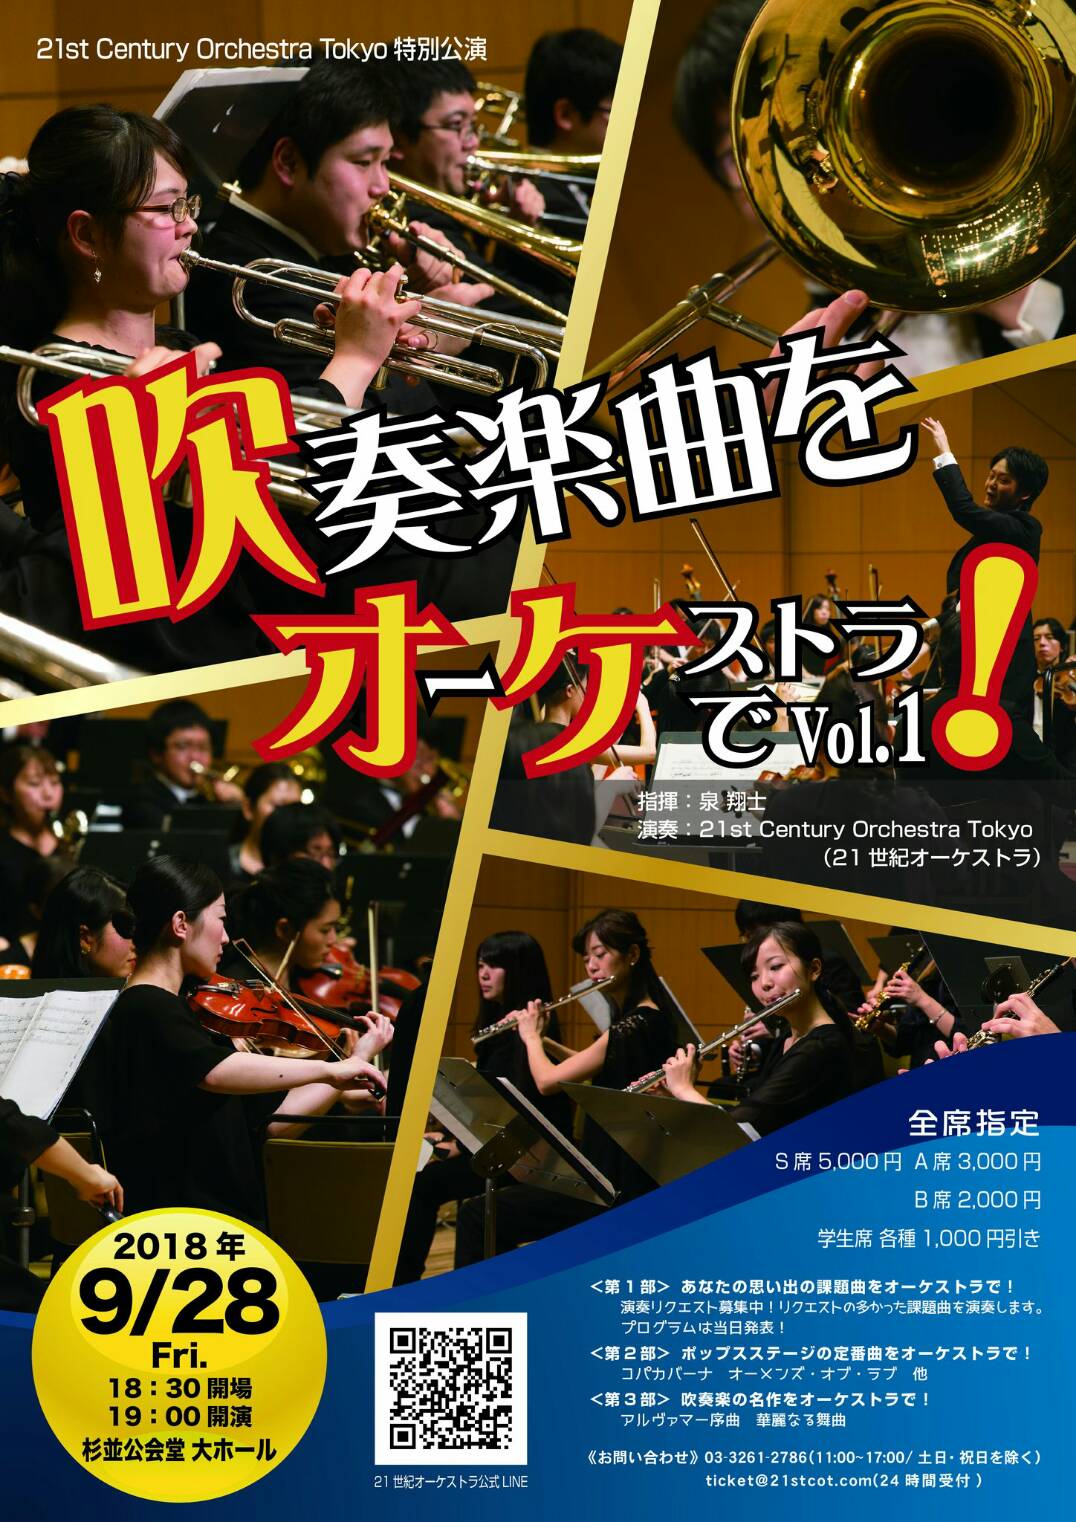 21st Century Orchestra Tokyo